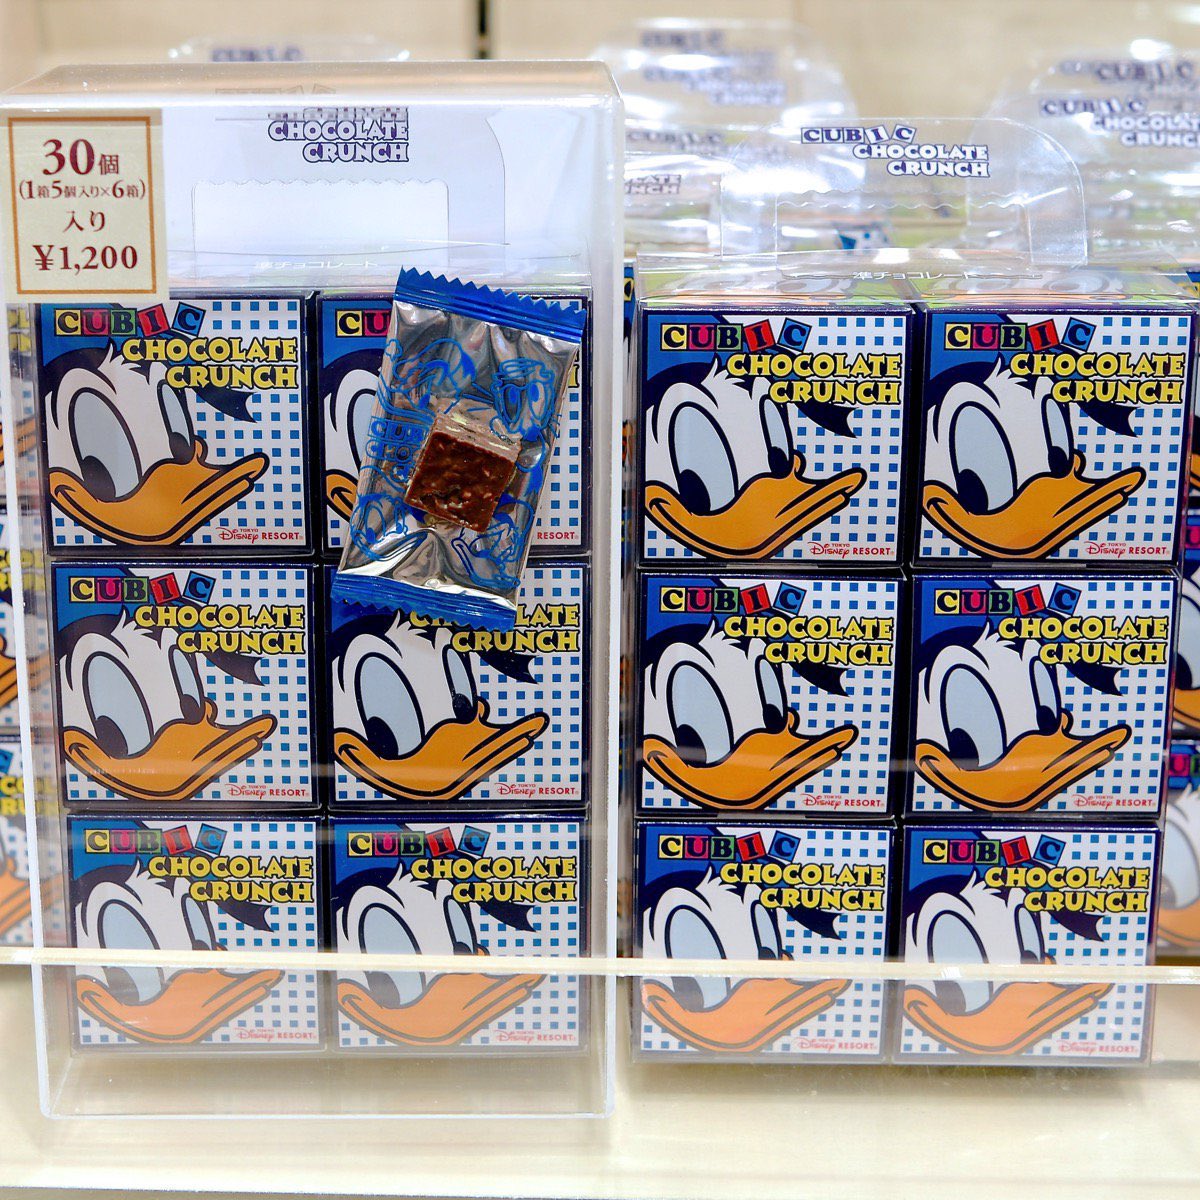 Mezzomikiのディズニーブログ 在 Twitter 上 東京ディズニーリゾート レギュラーお菓子のお土産 ドナルドのキュービックチョコレート クランチ くまのプーさんのキャンディー ミッキー ミニーのおせんべい 本日新発売 詳しくは T Co H3h6neeo64